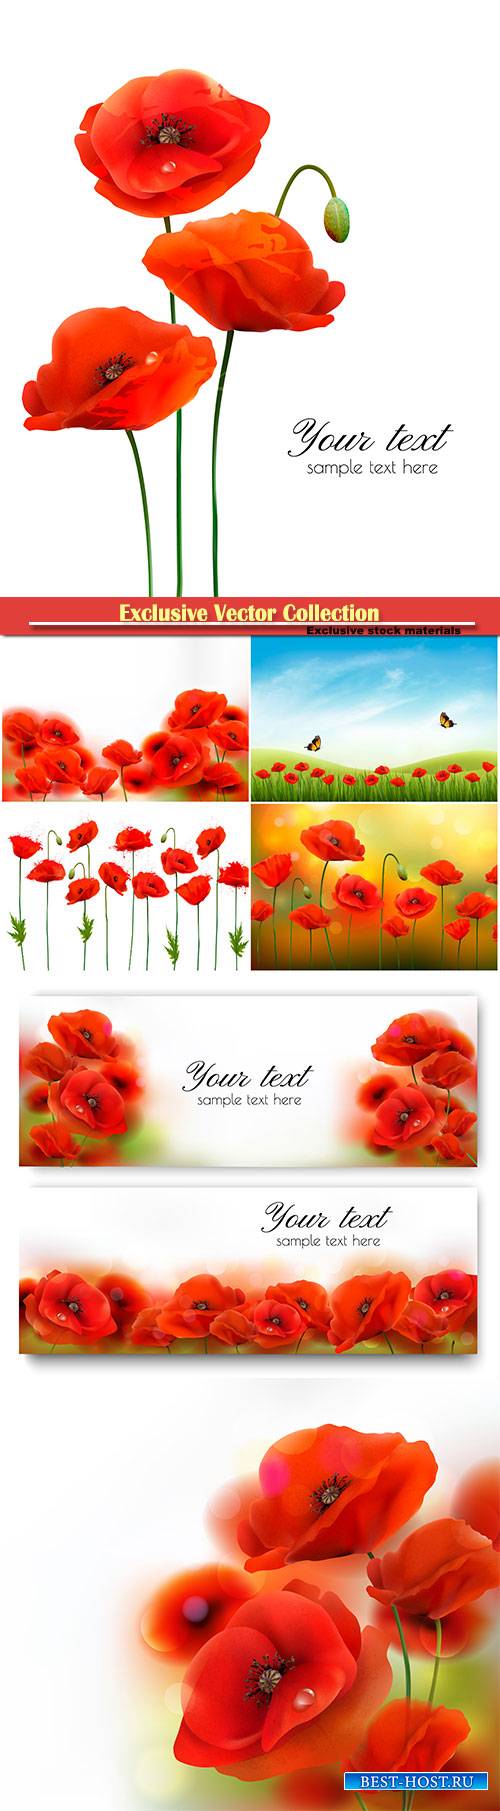 Red poppy flower background vector illustration